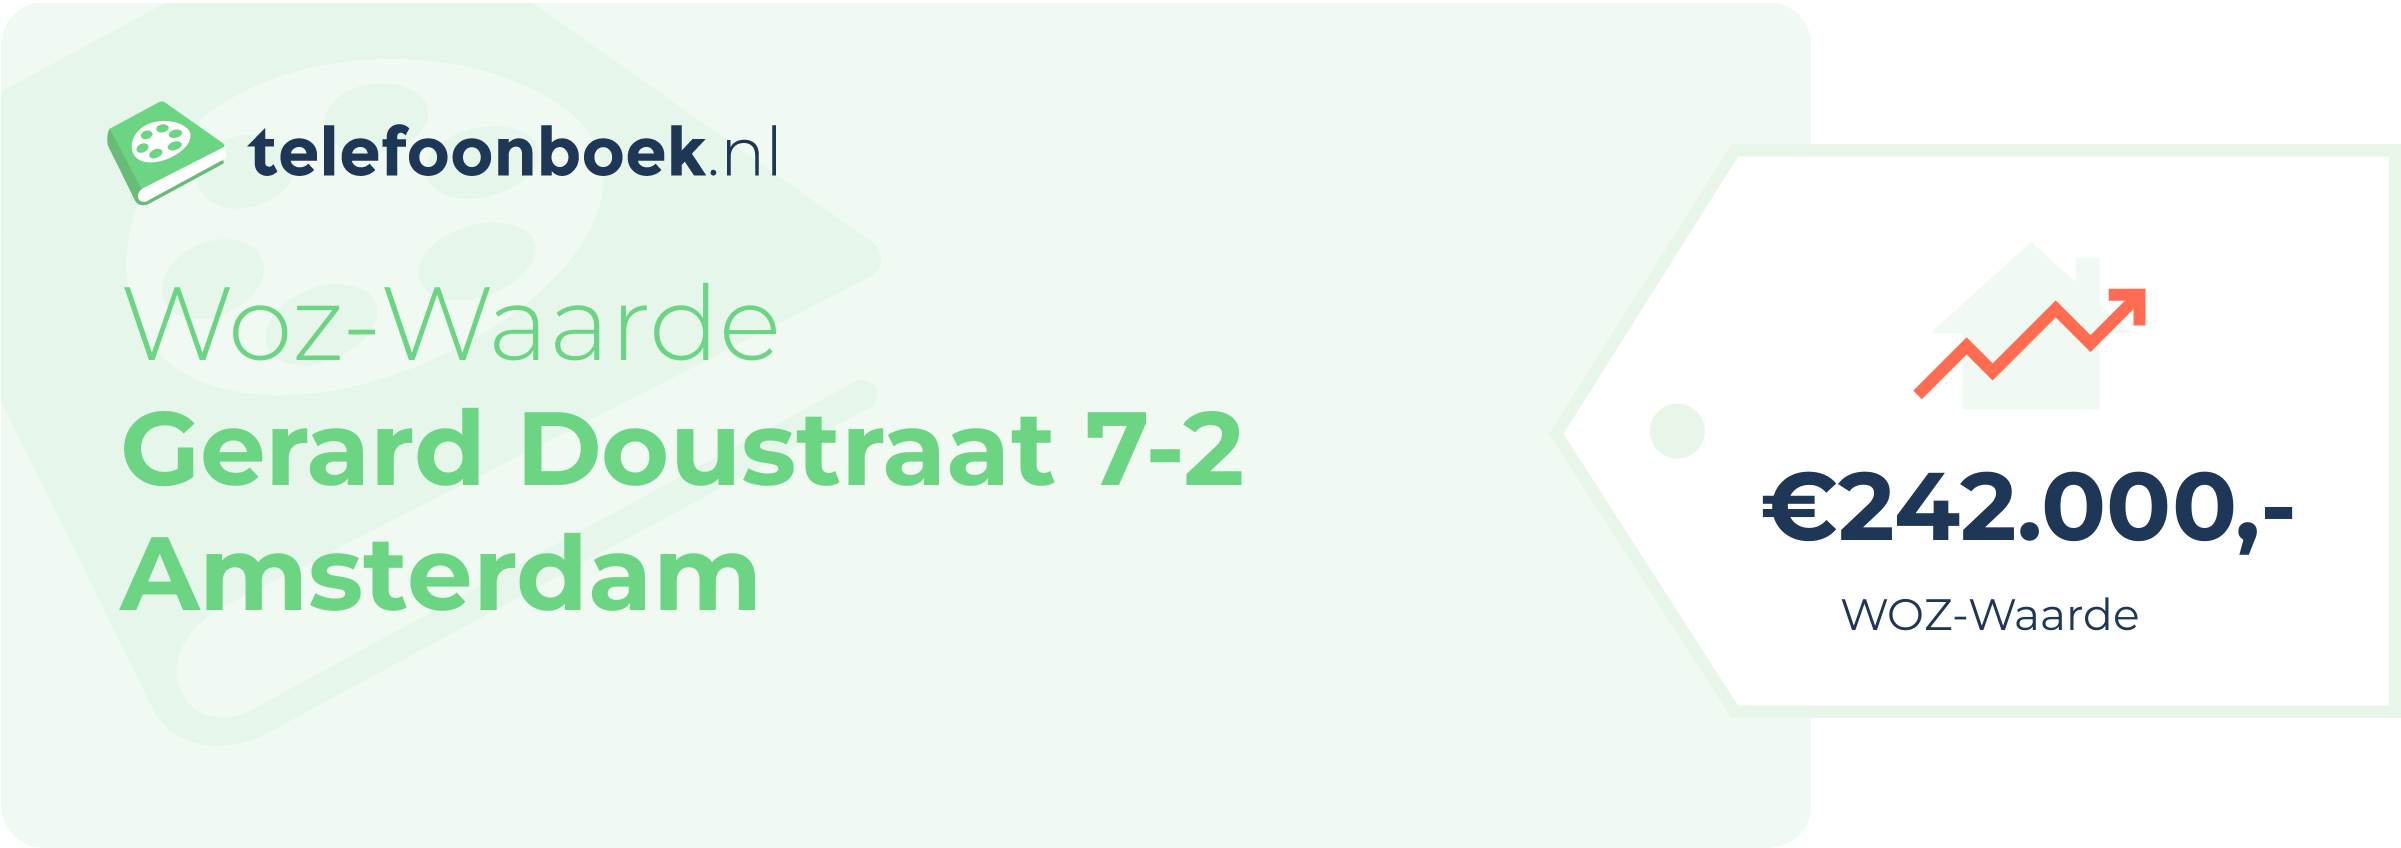 WOZ-waarde Gerard Doustraat 7-2 Amsterdam